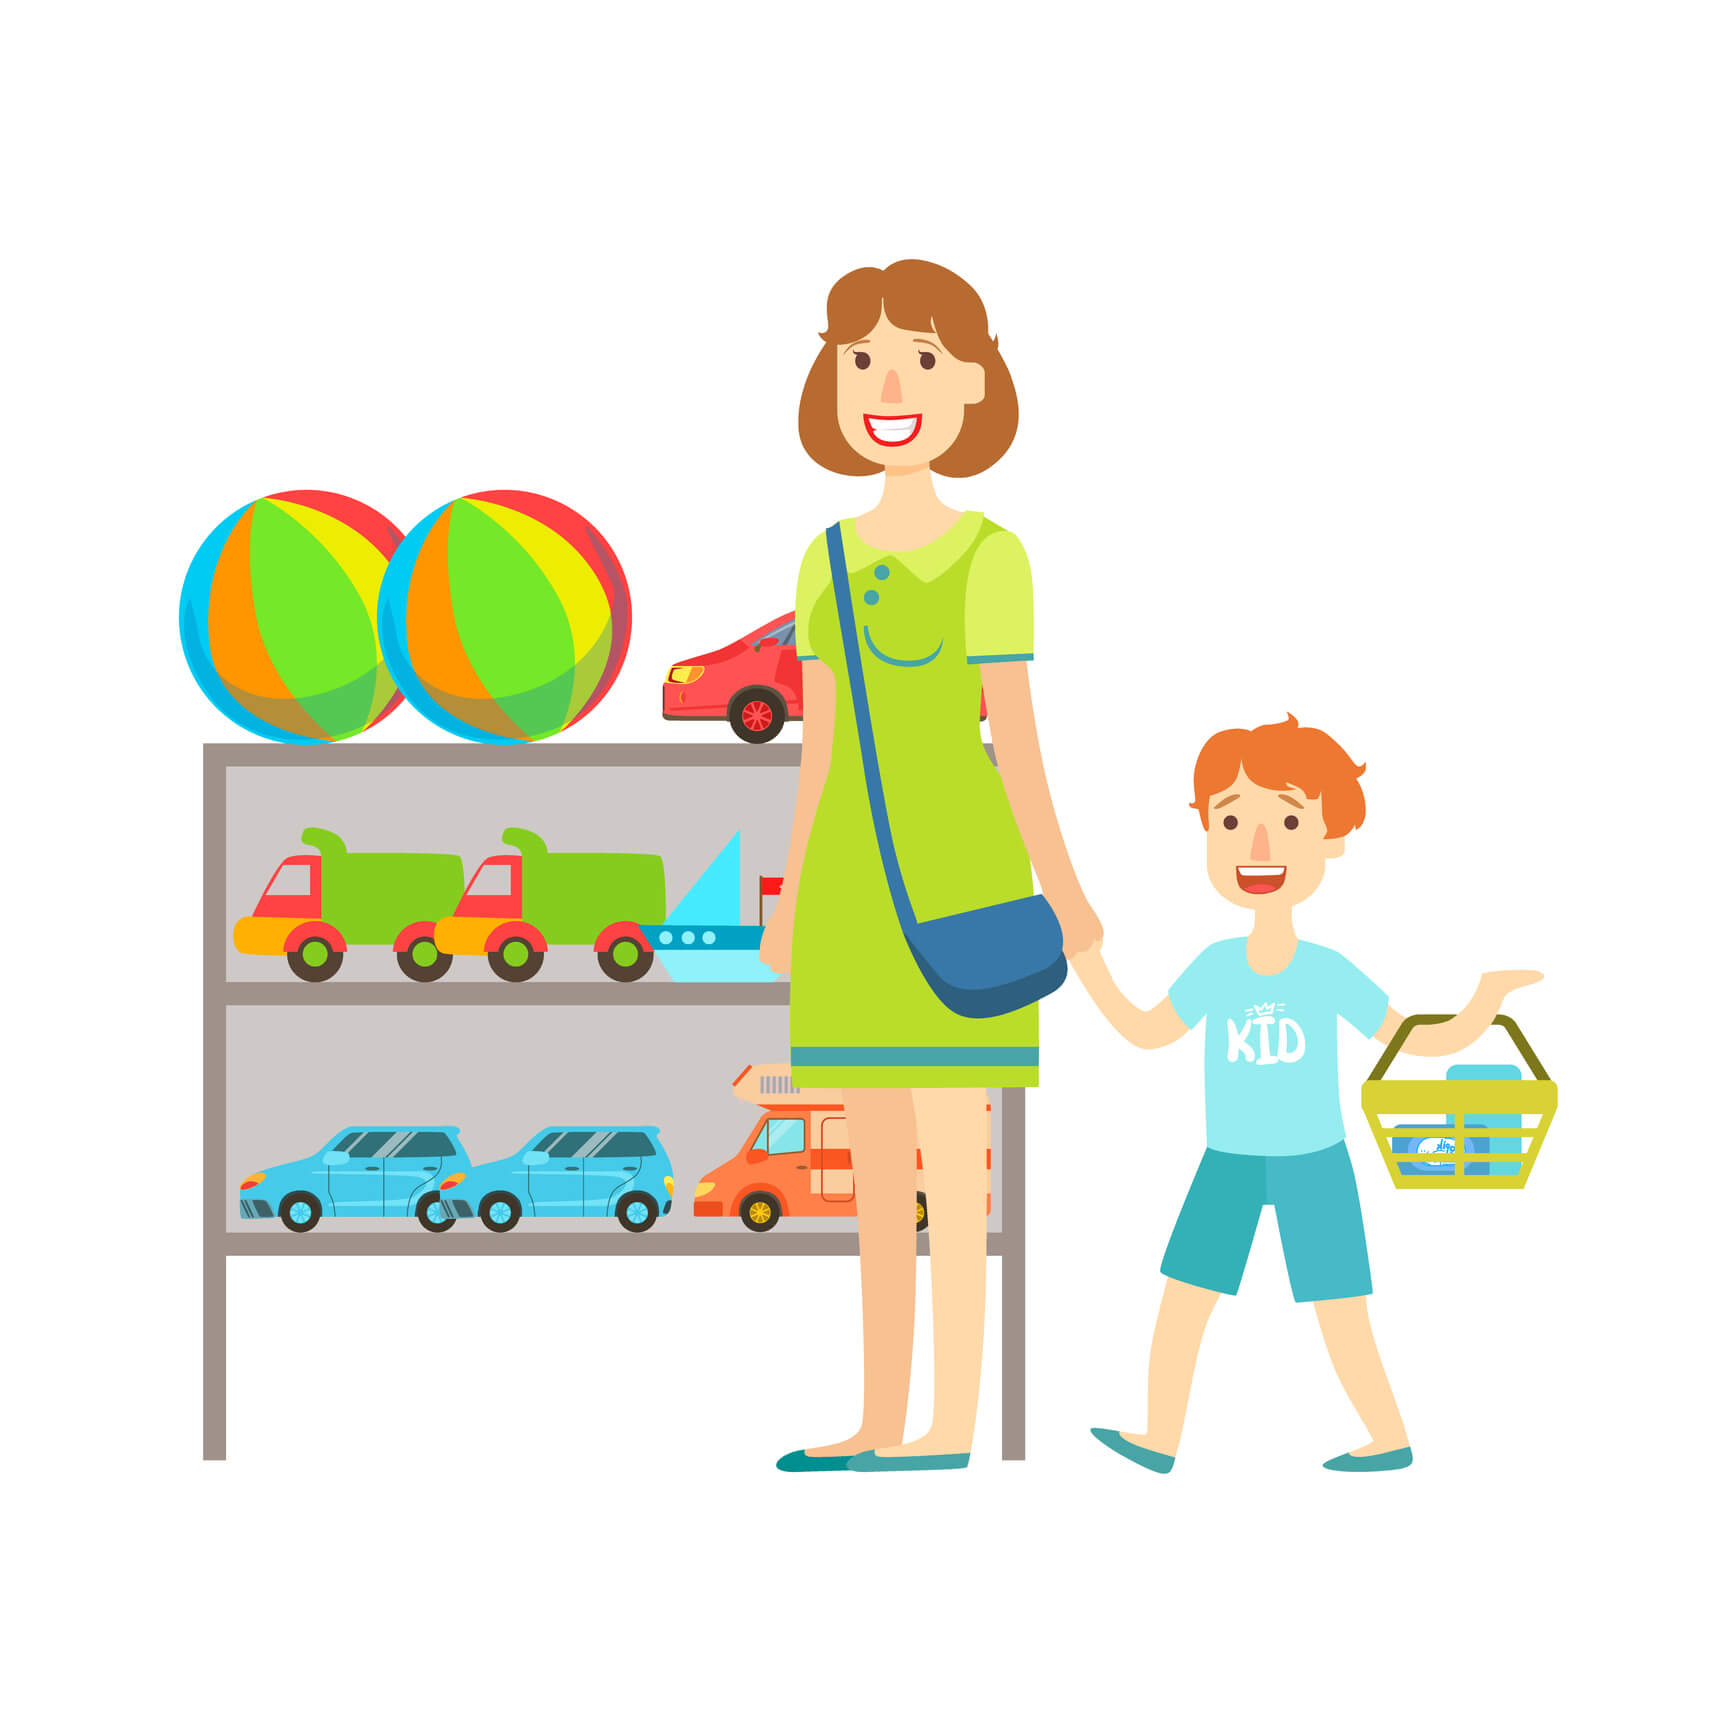 Иллюстрация продавец магазин игрушек для детей